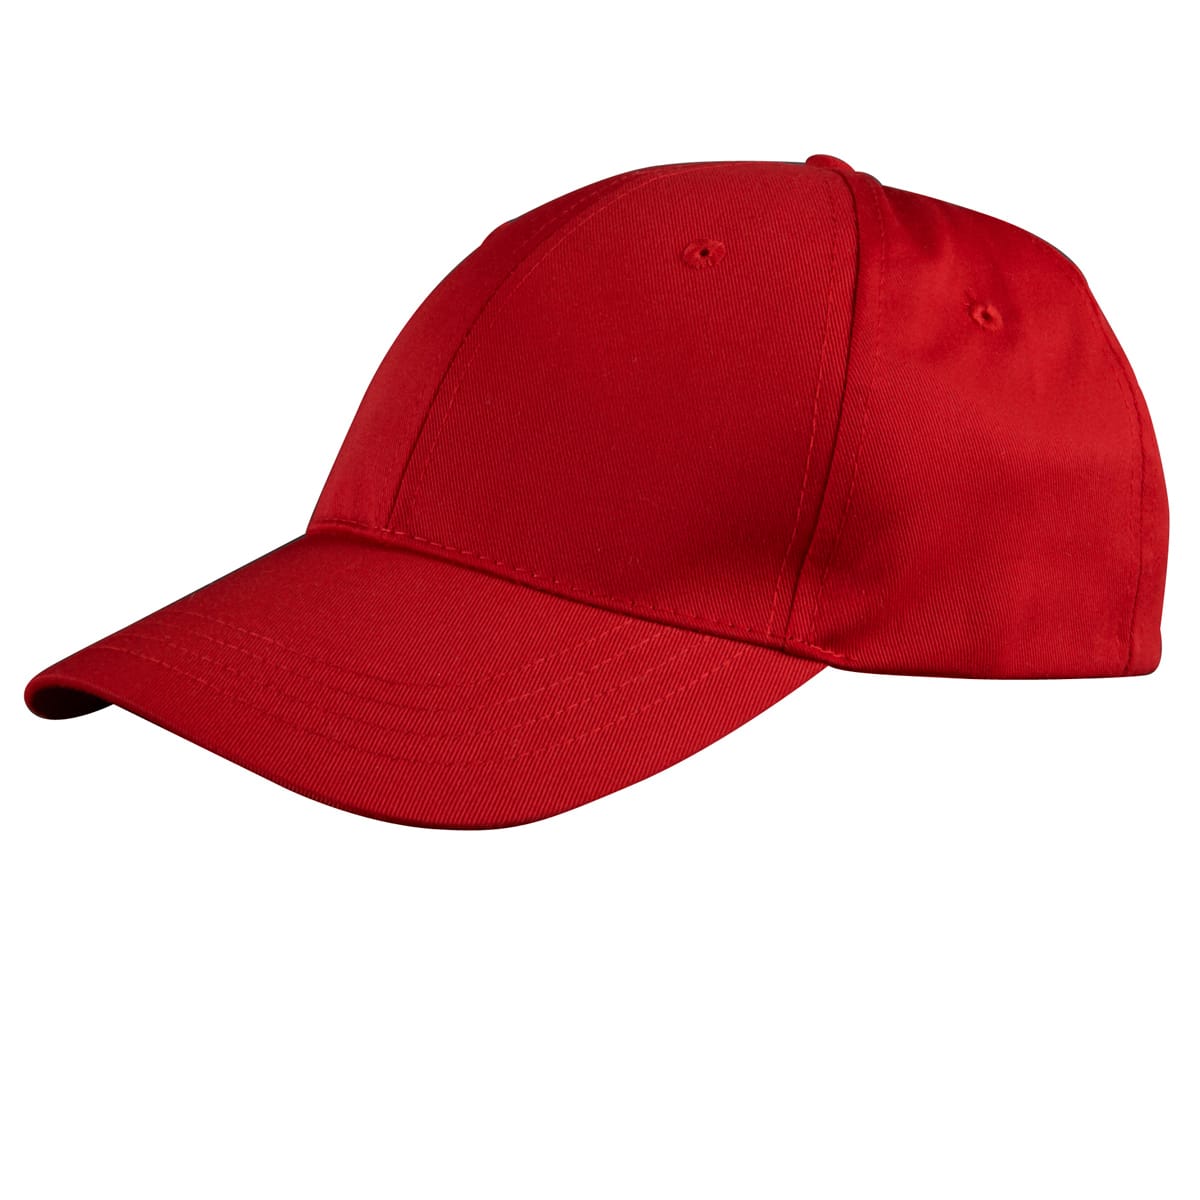 baseball cap plain